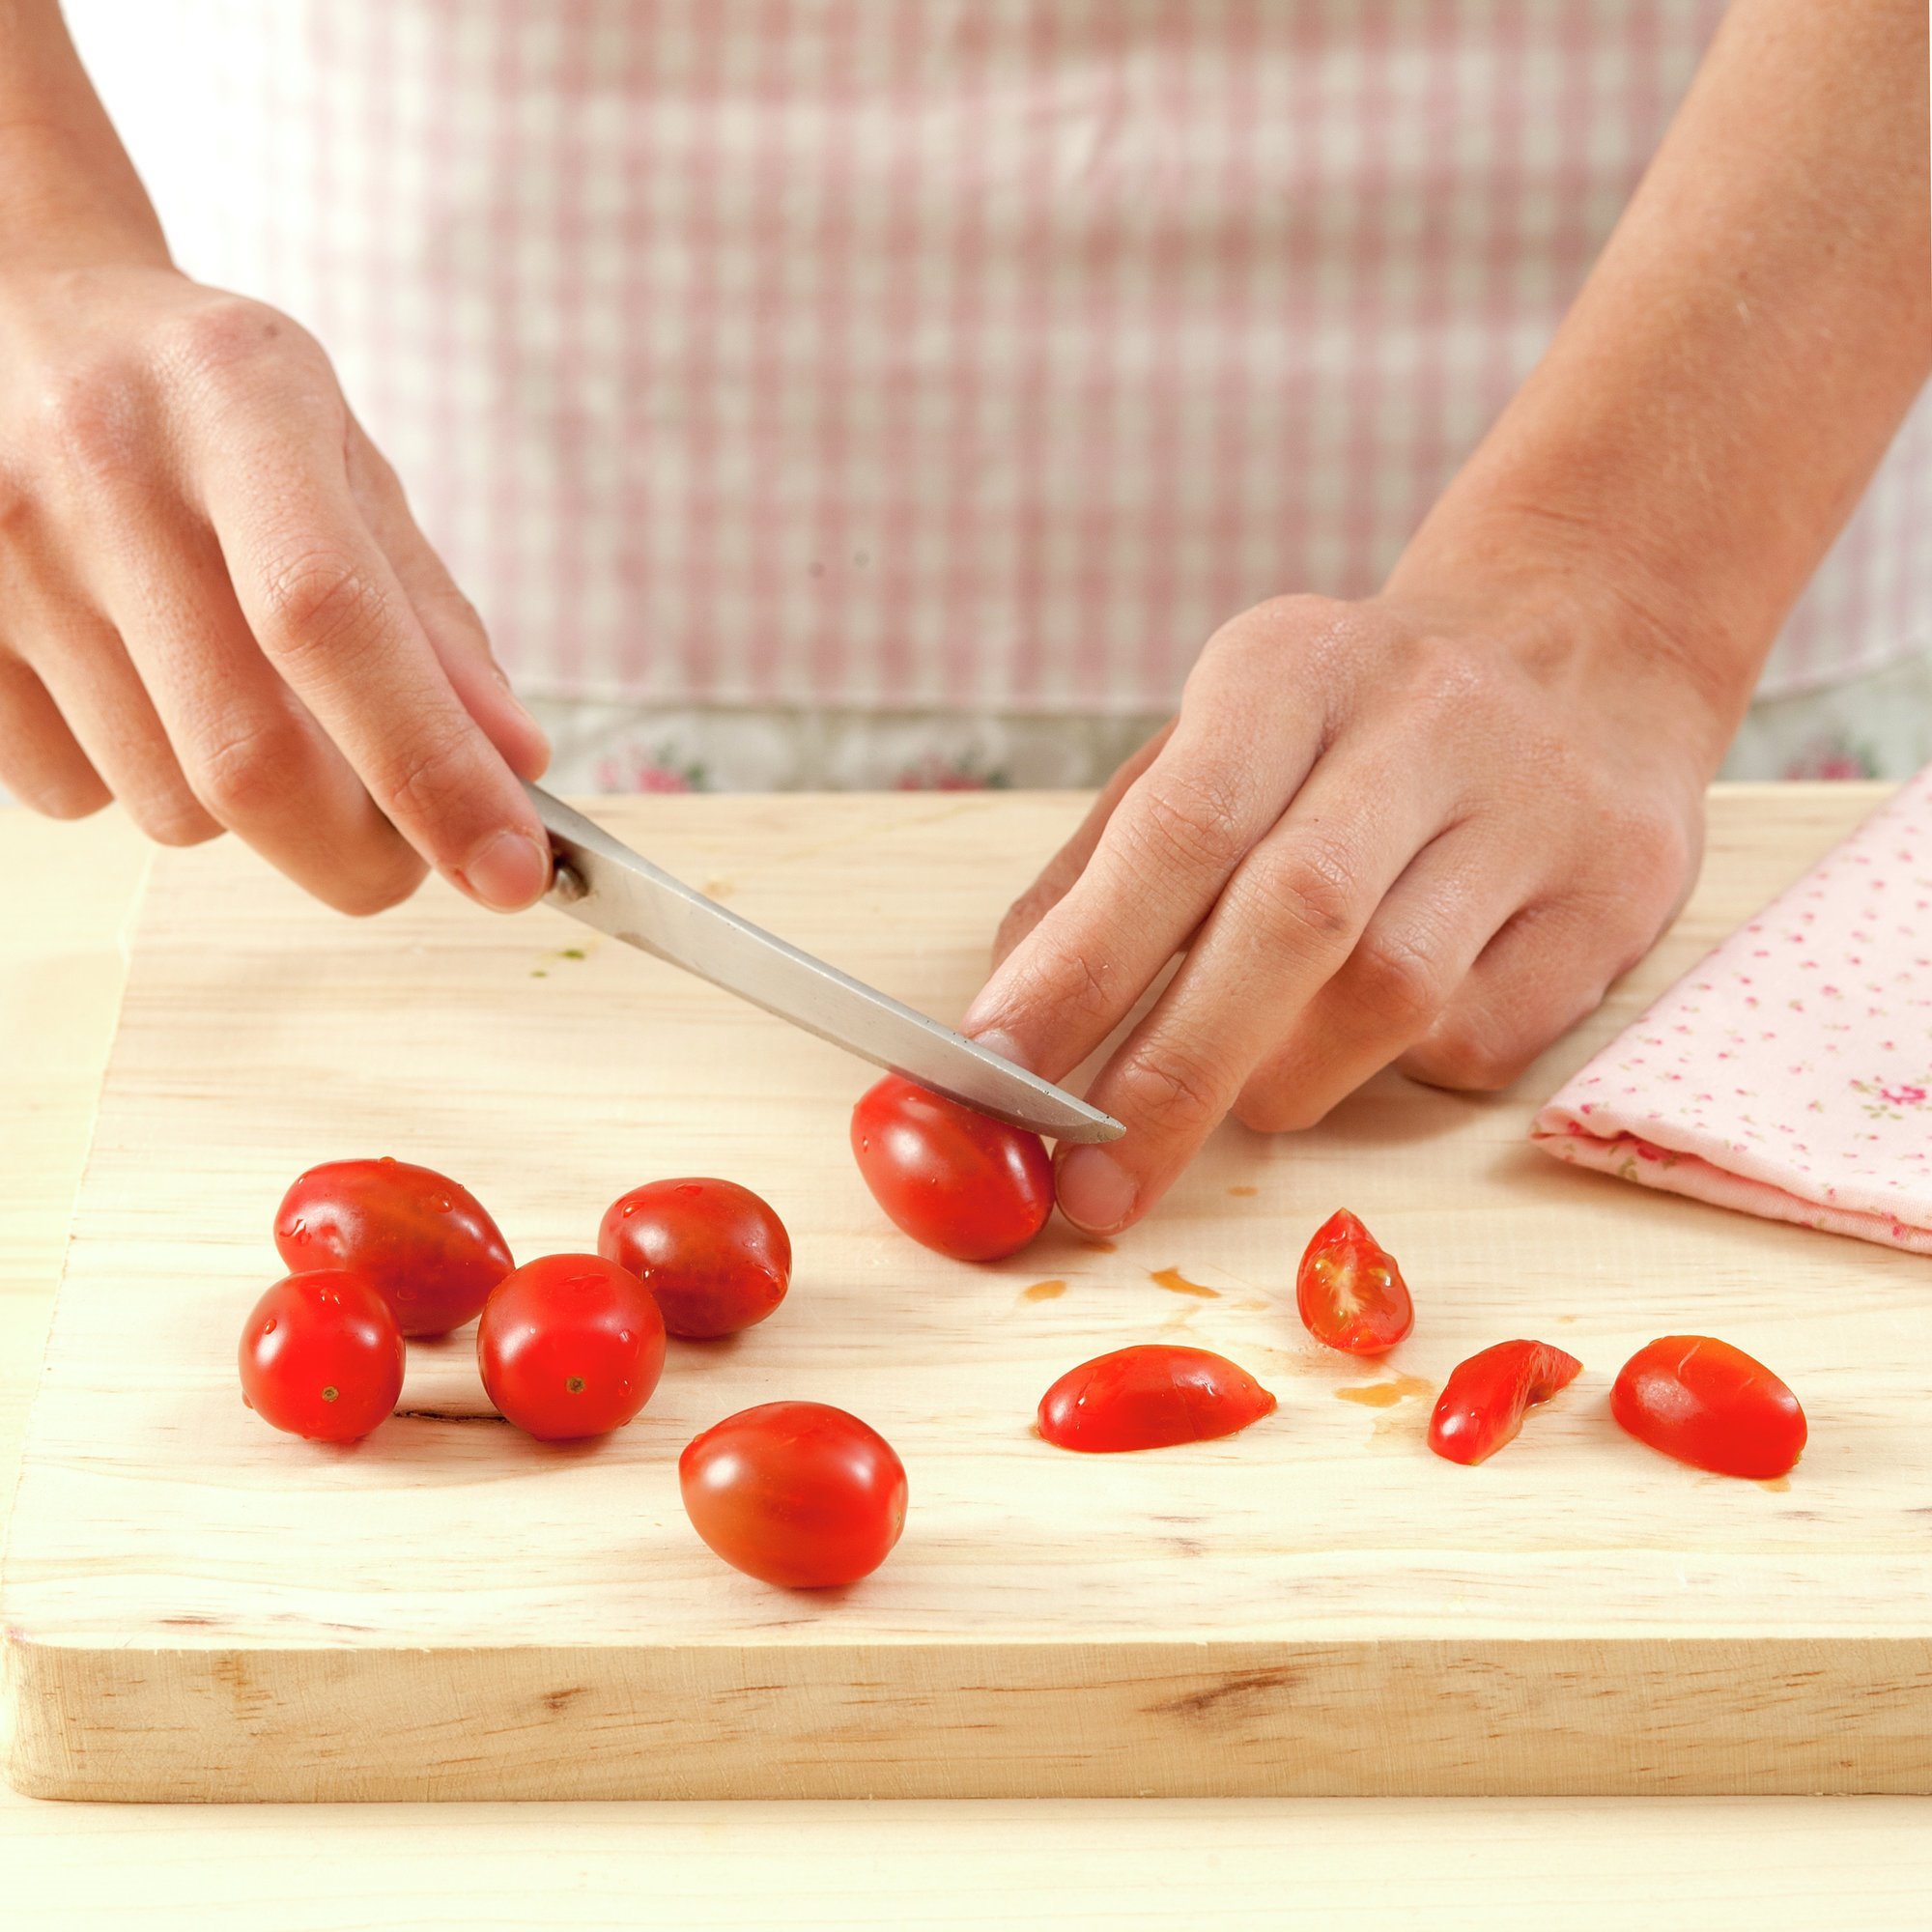 2. Corta los tomatitos